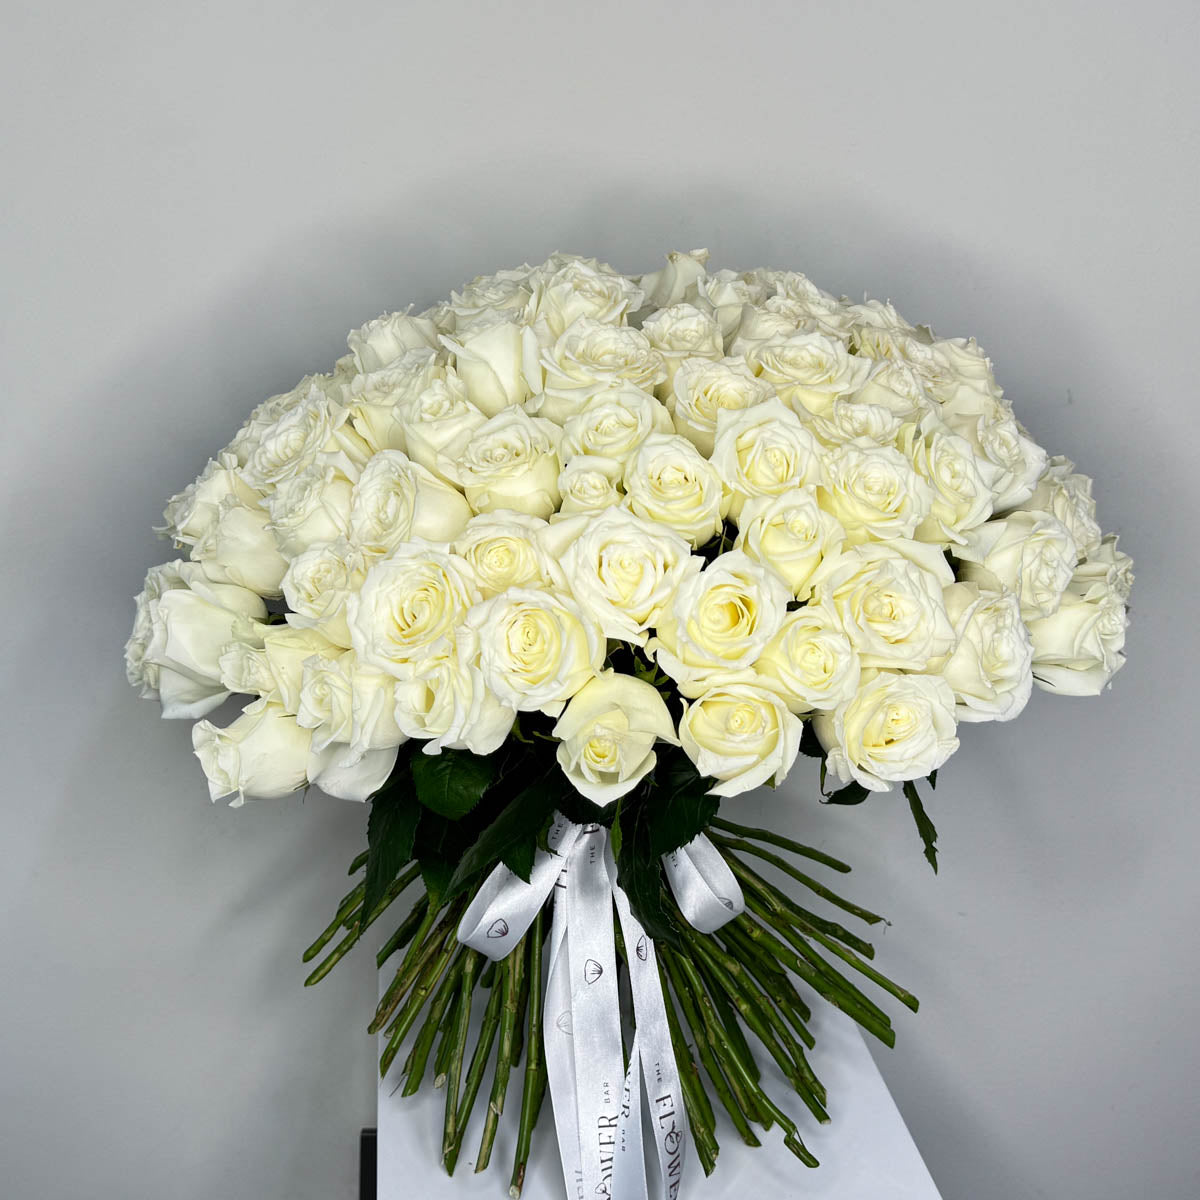 101 White roses